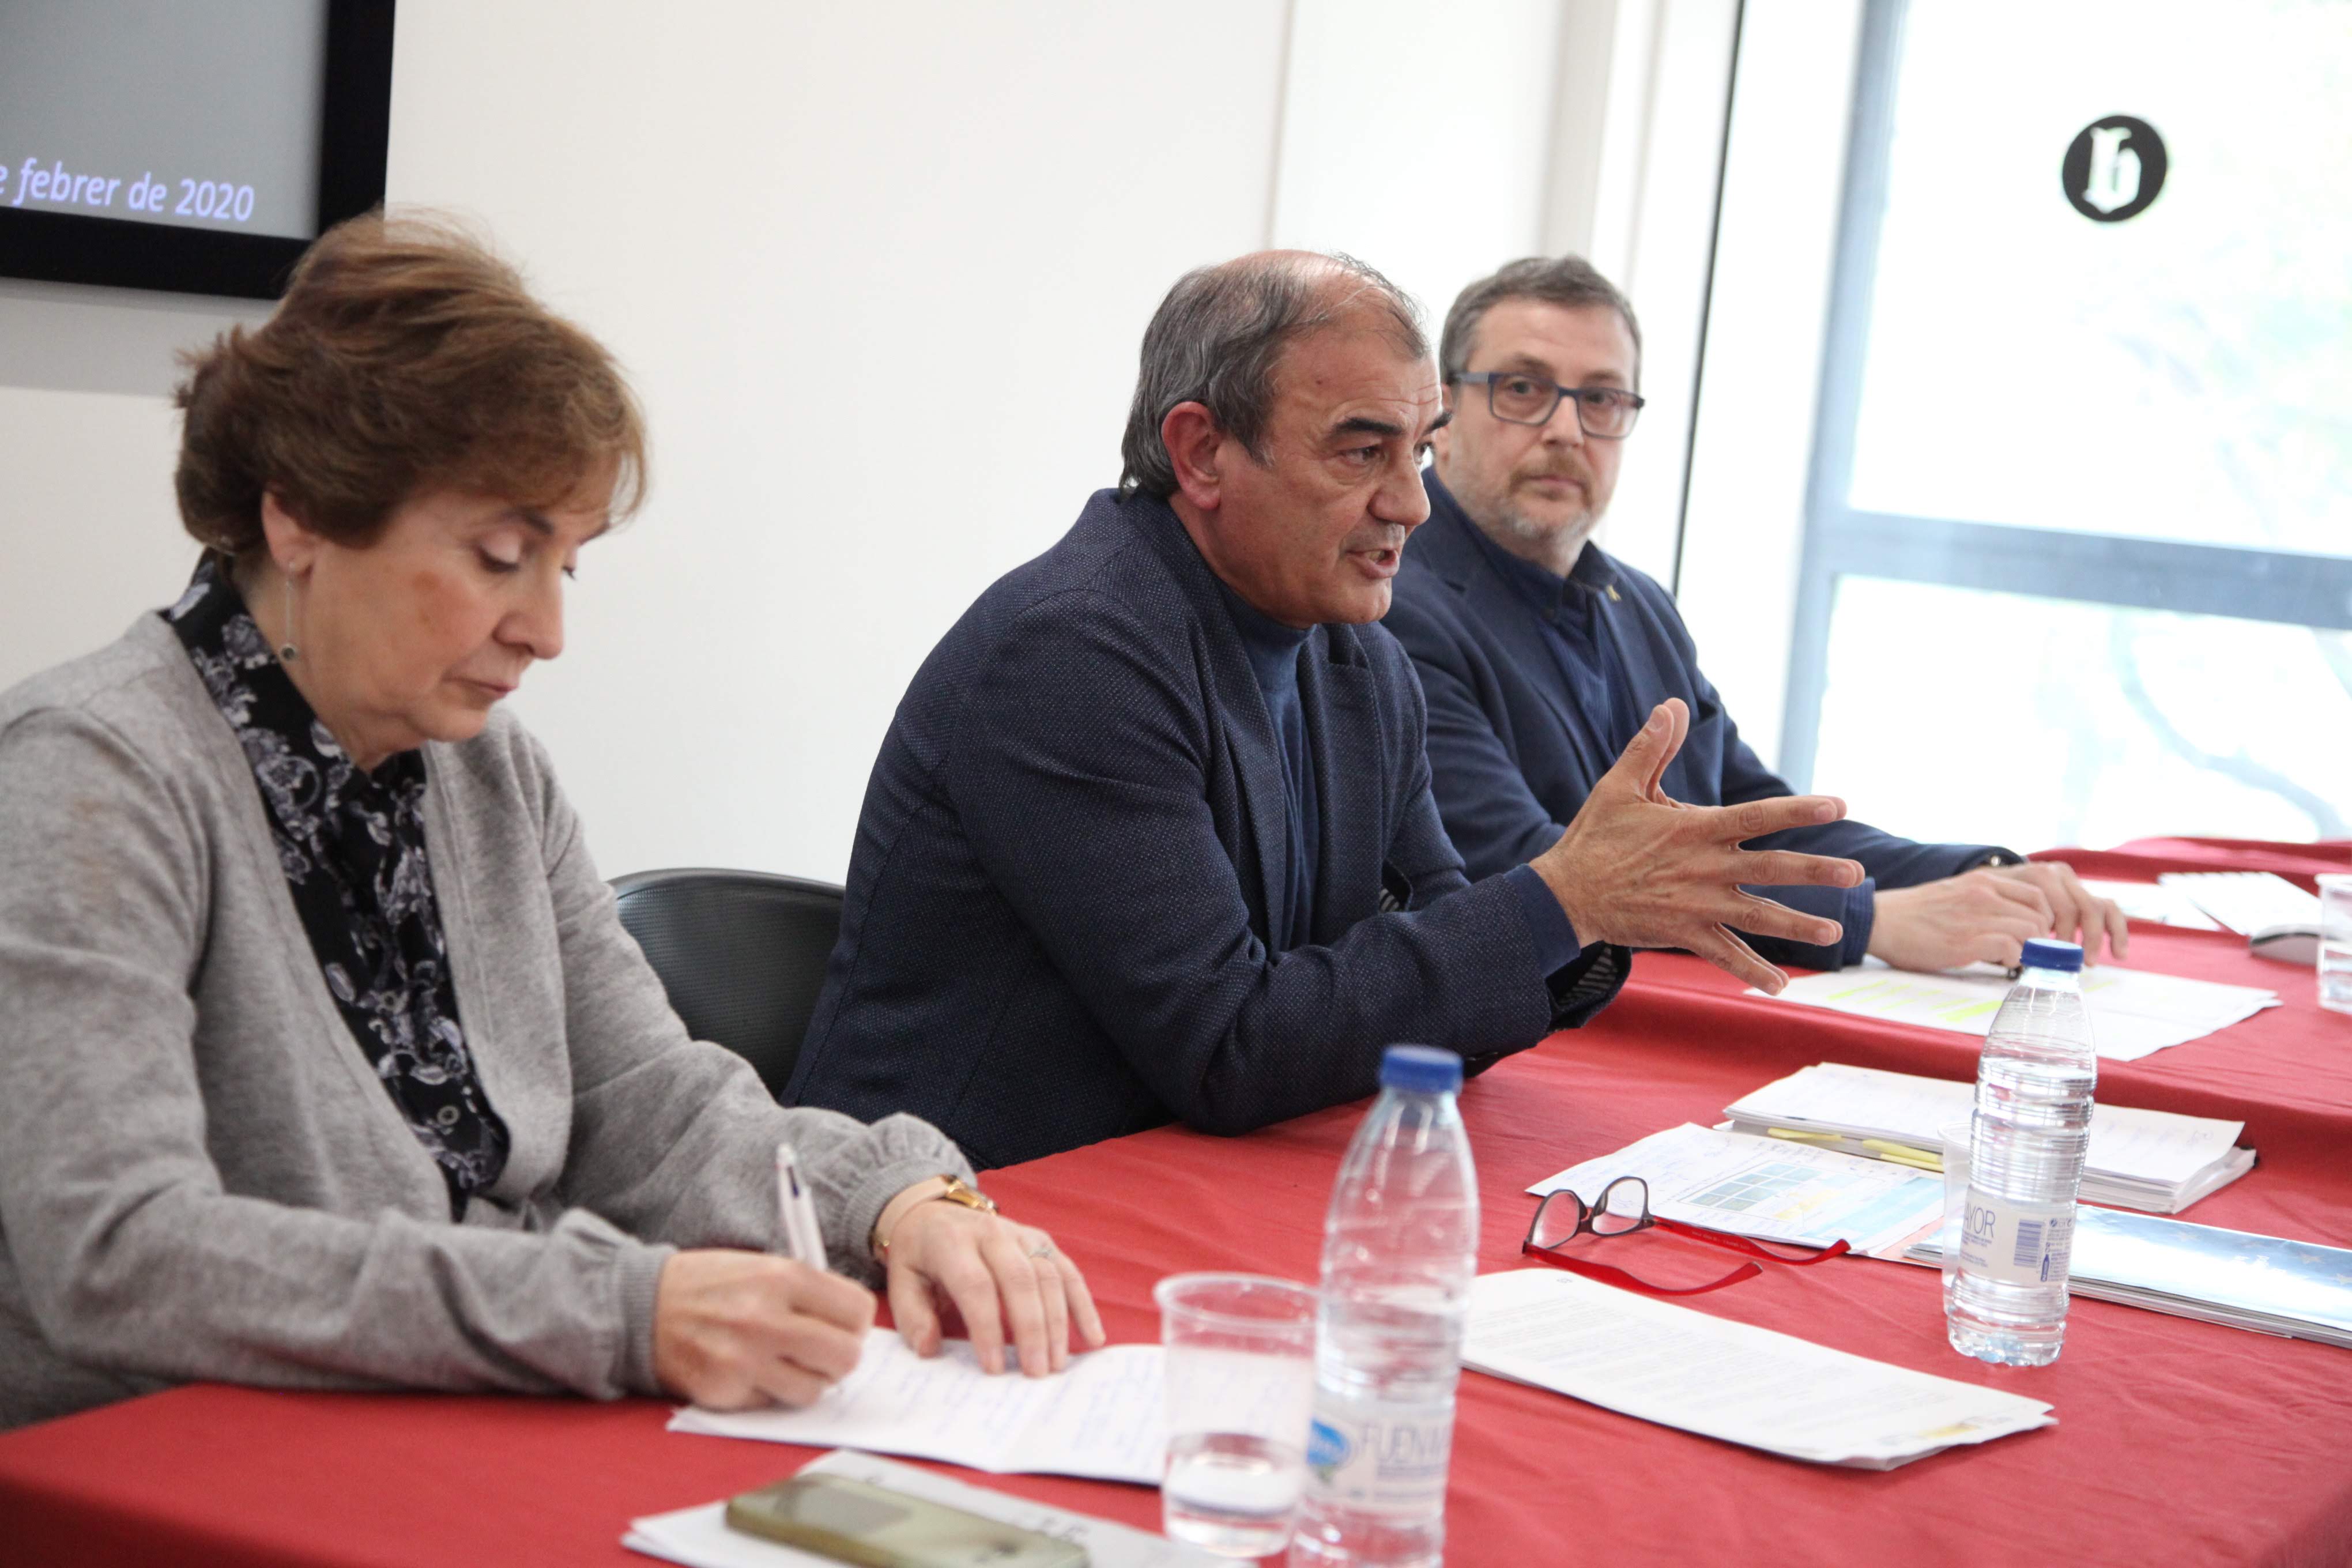 L’Observatori de l’Economia Social presenta el primer estudi sobre l’estat de l’Economia Social a Catalunya